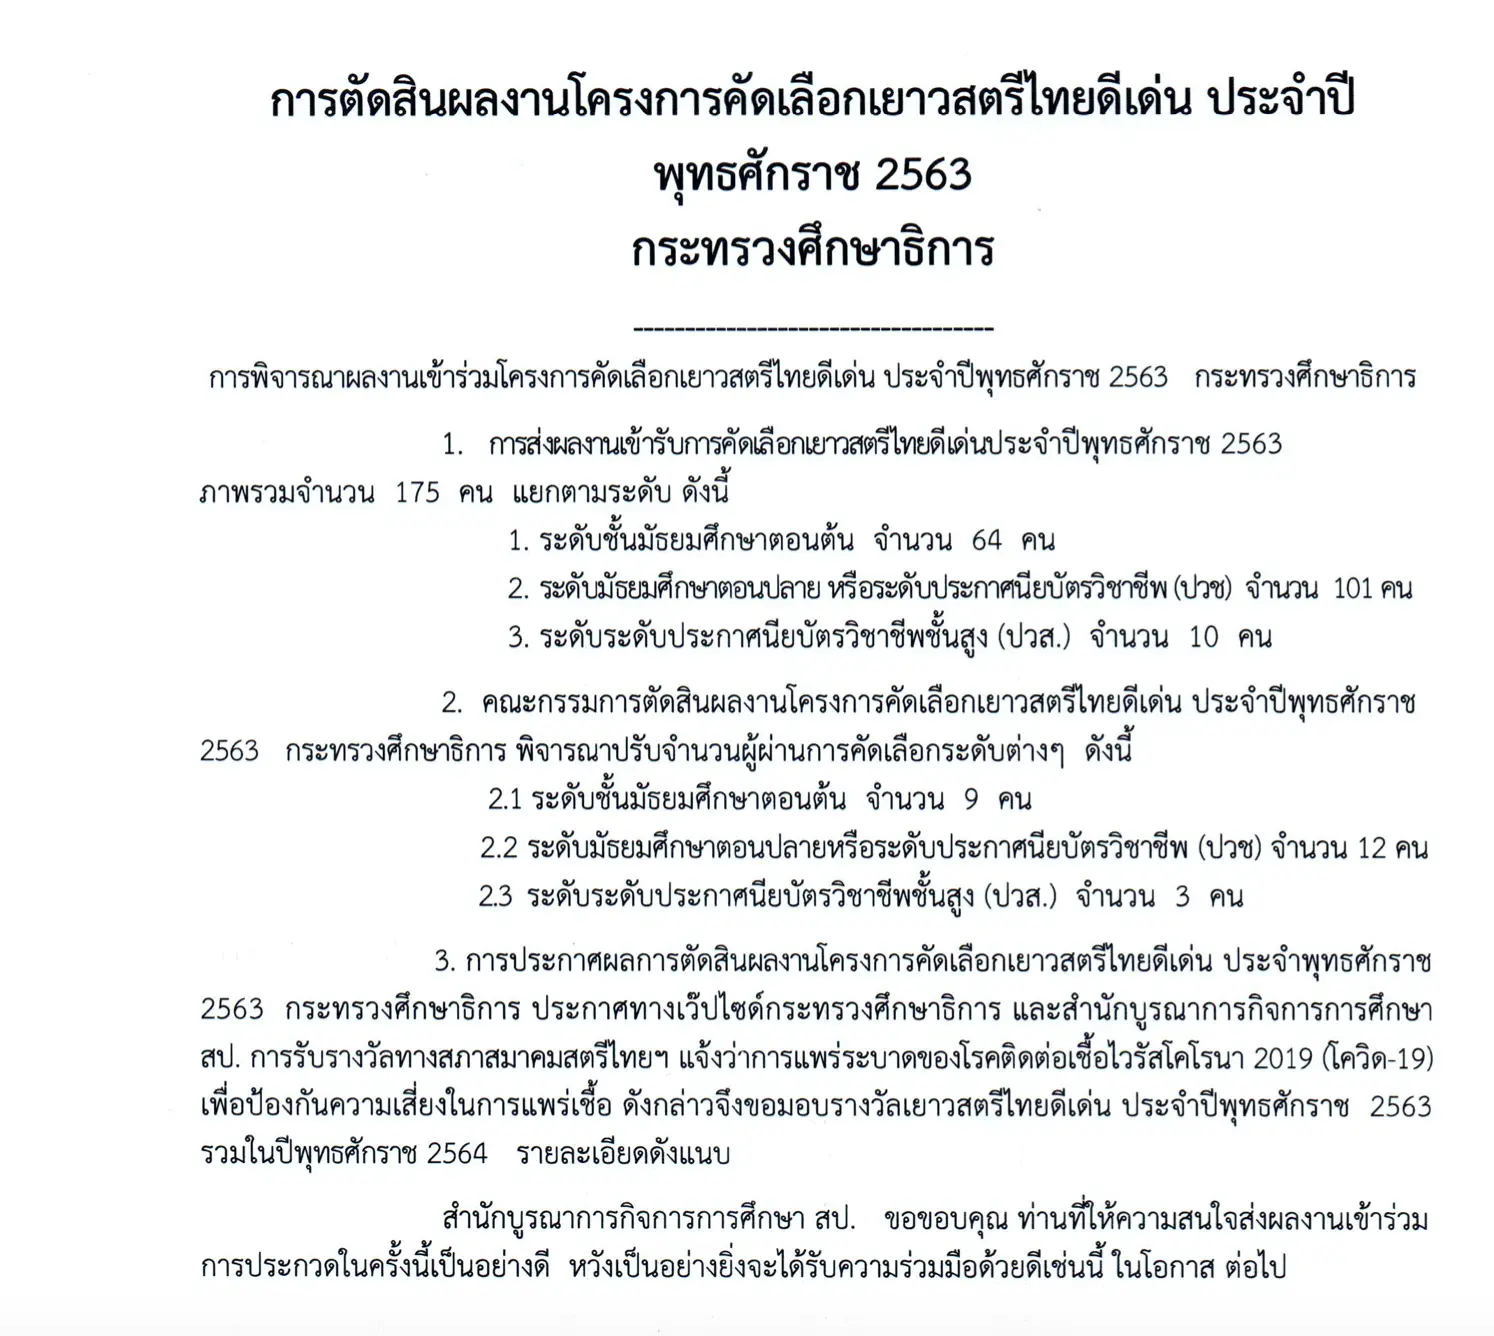 ศธ.ประกาศผลการตัดสินผลงานโครงการคัดเลือกเยาวสตรีไทยดีเด่น ประจำปีพุทธศักราช 2563